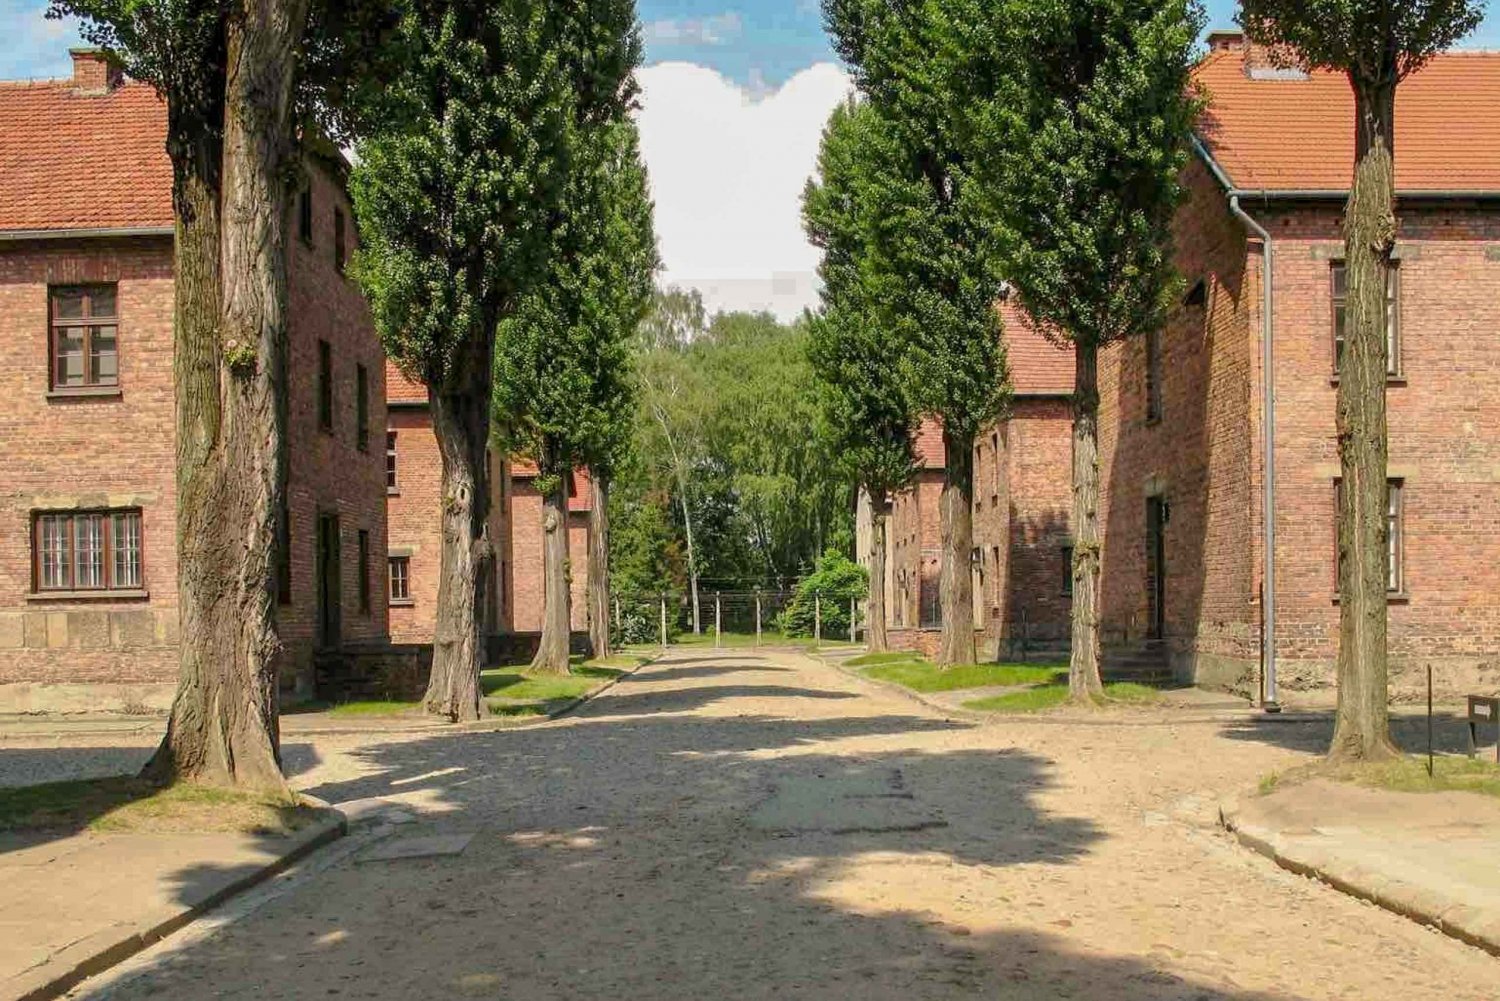 Auschwitz-Birkenau and Schindler's Factory Tour from Krakow